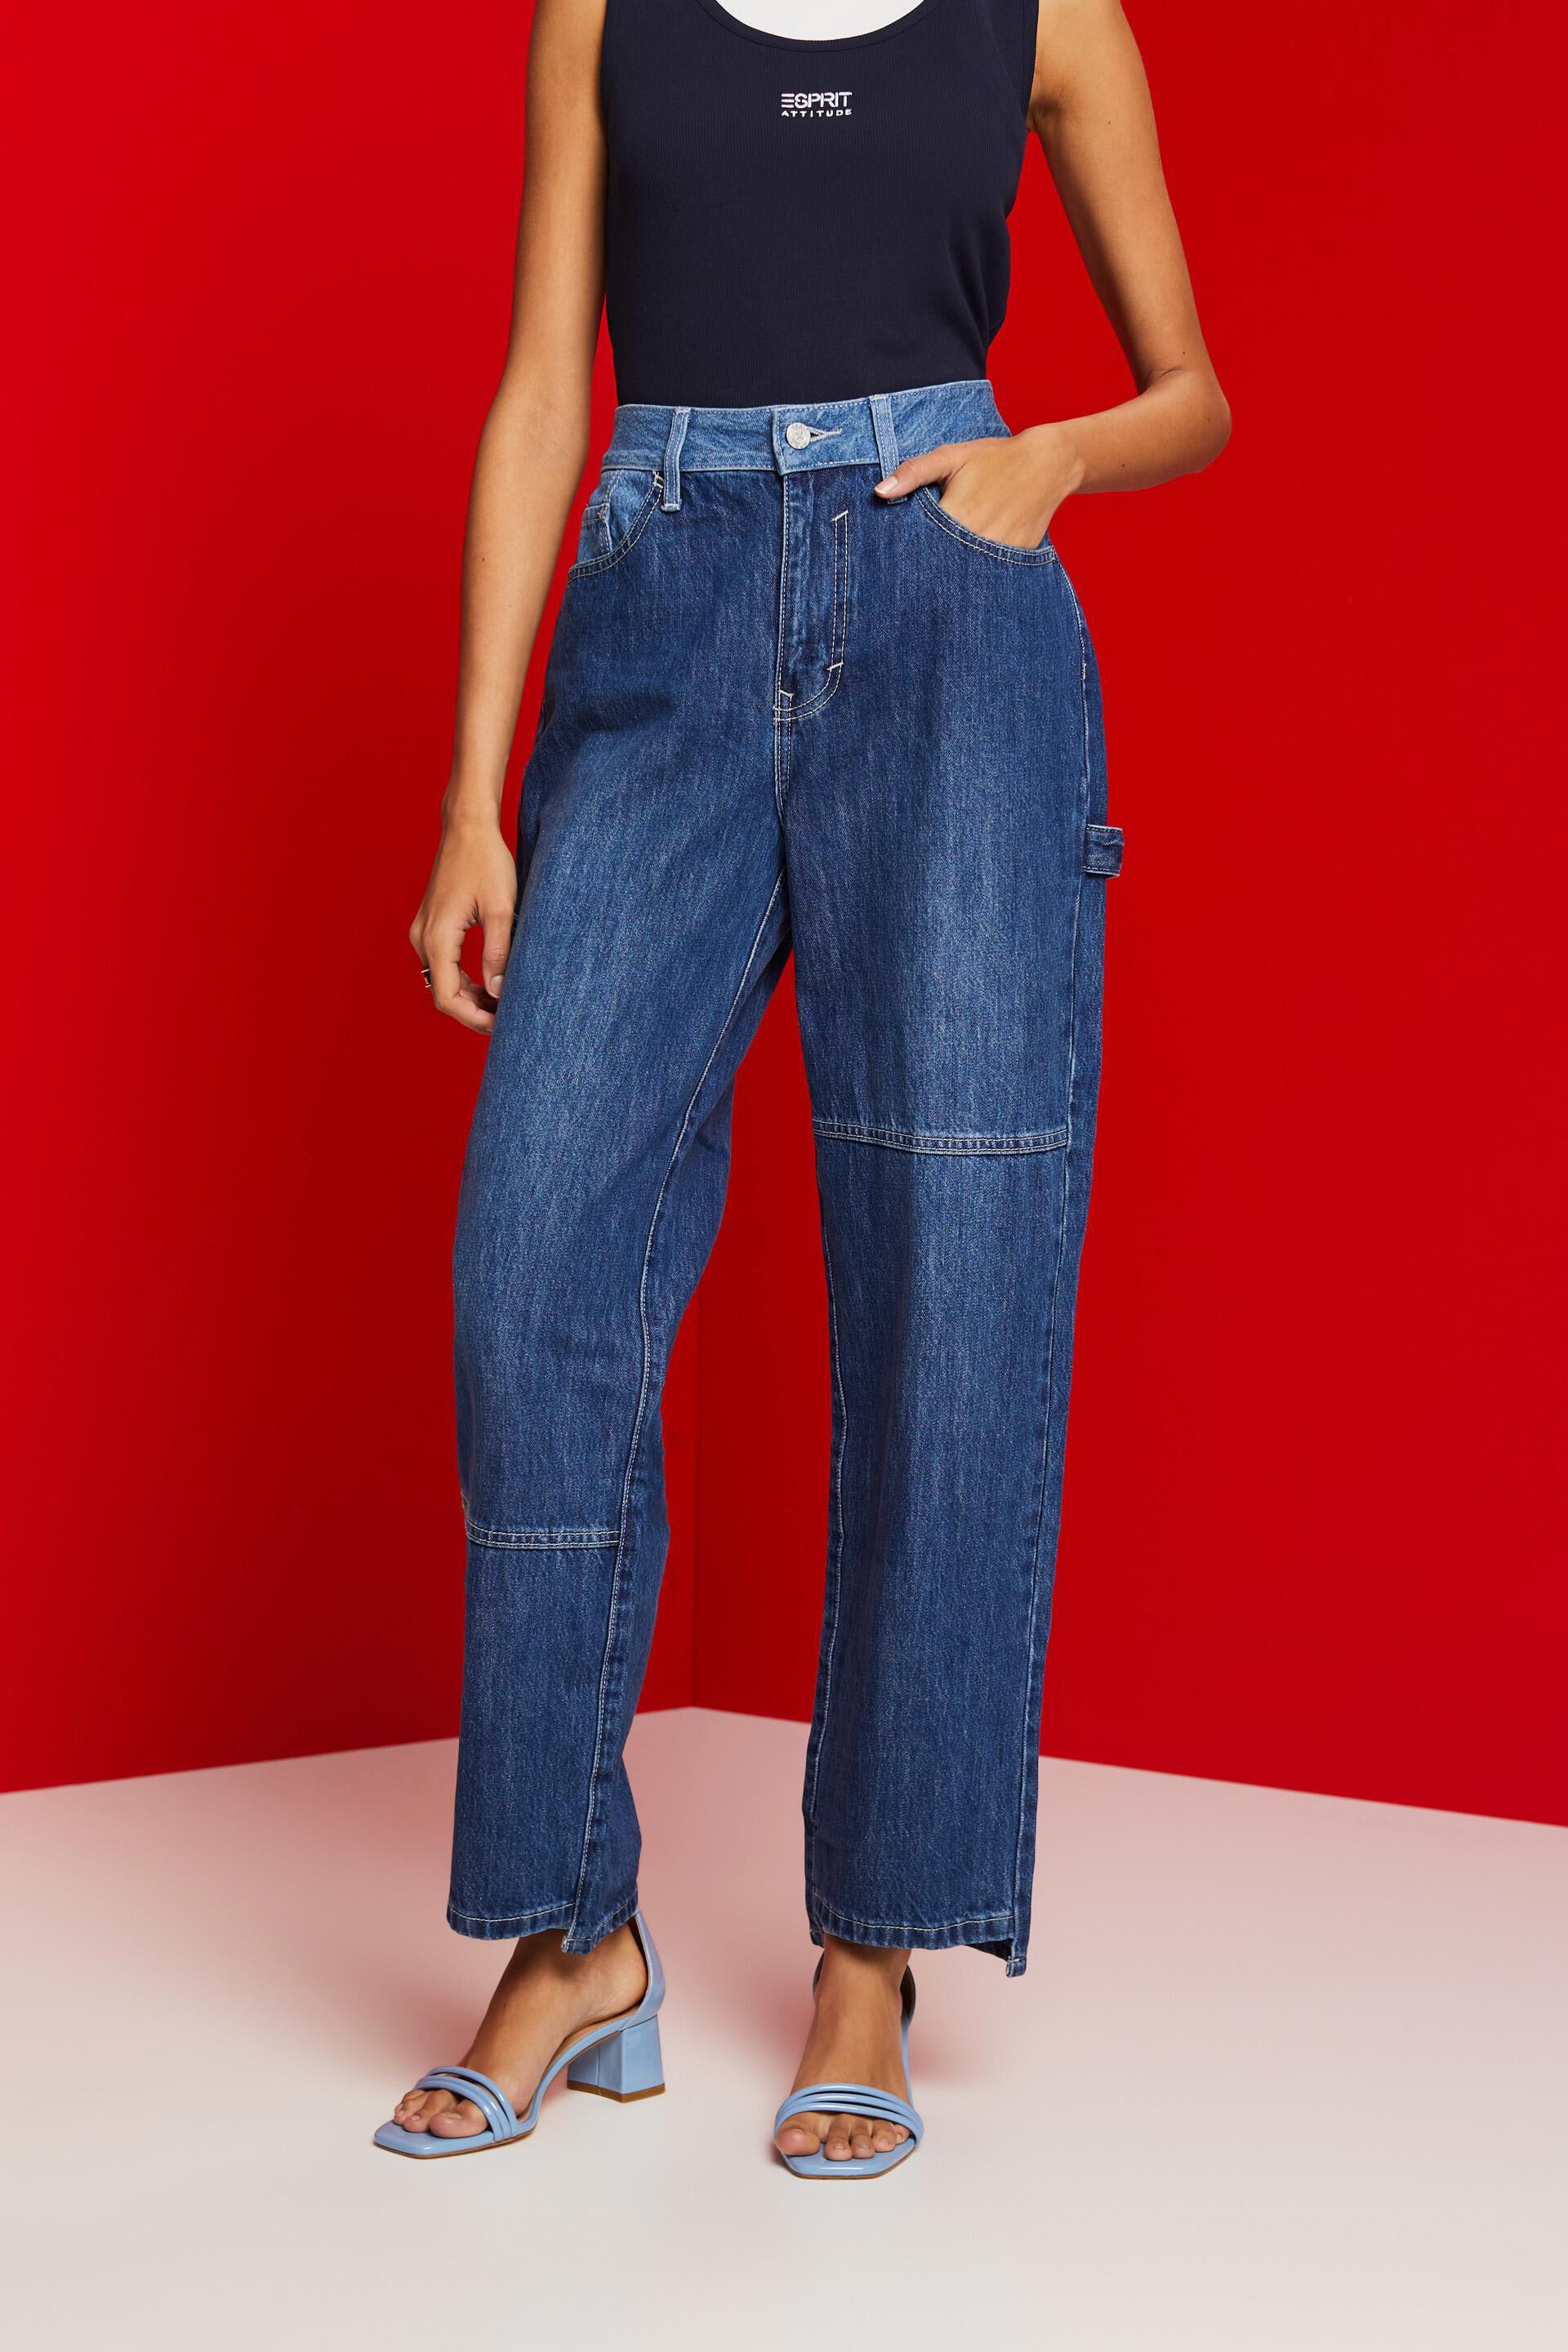 Esprit Jeans Asymmetric 90s Wide-Leg